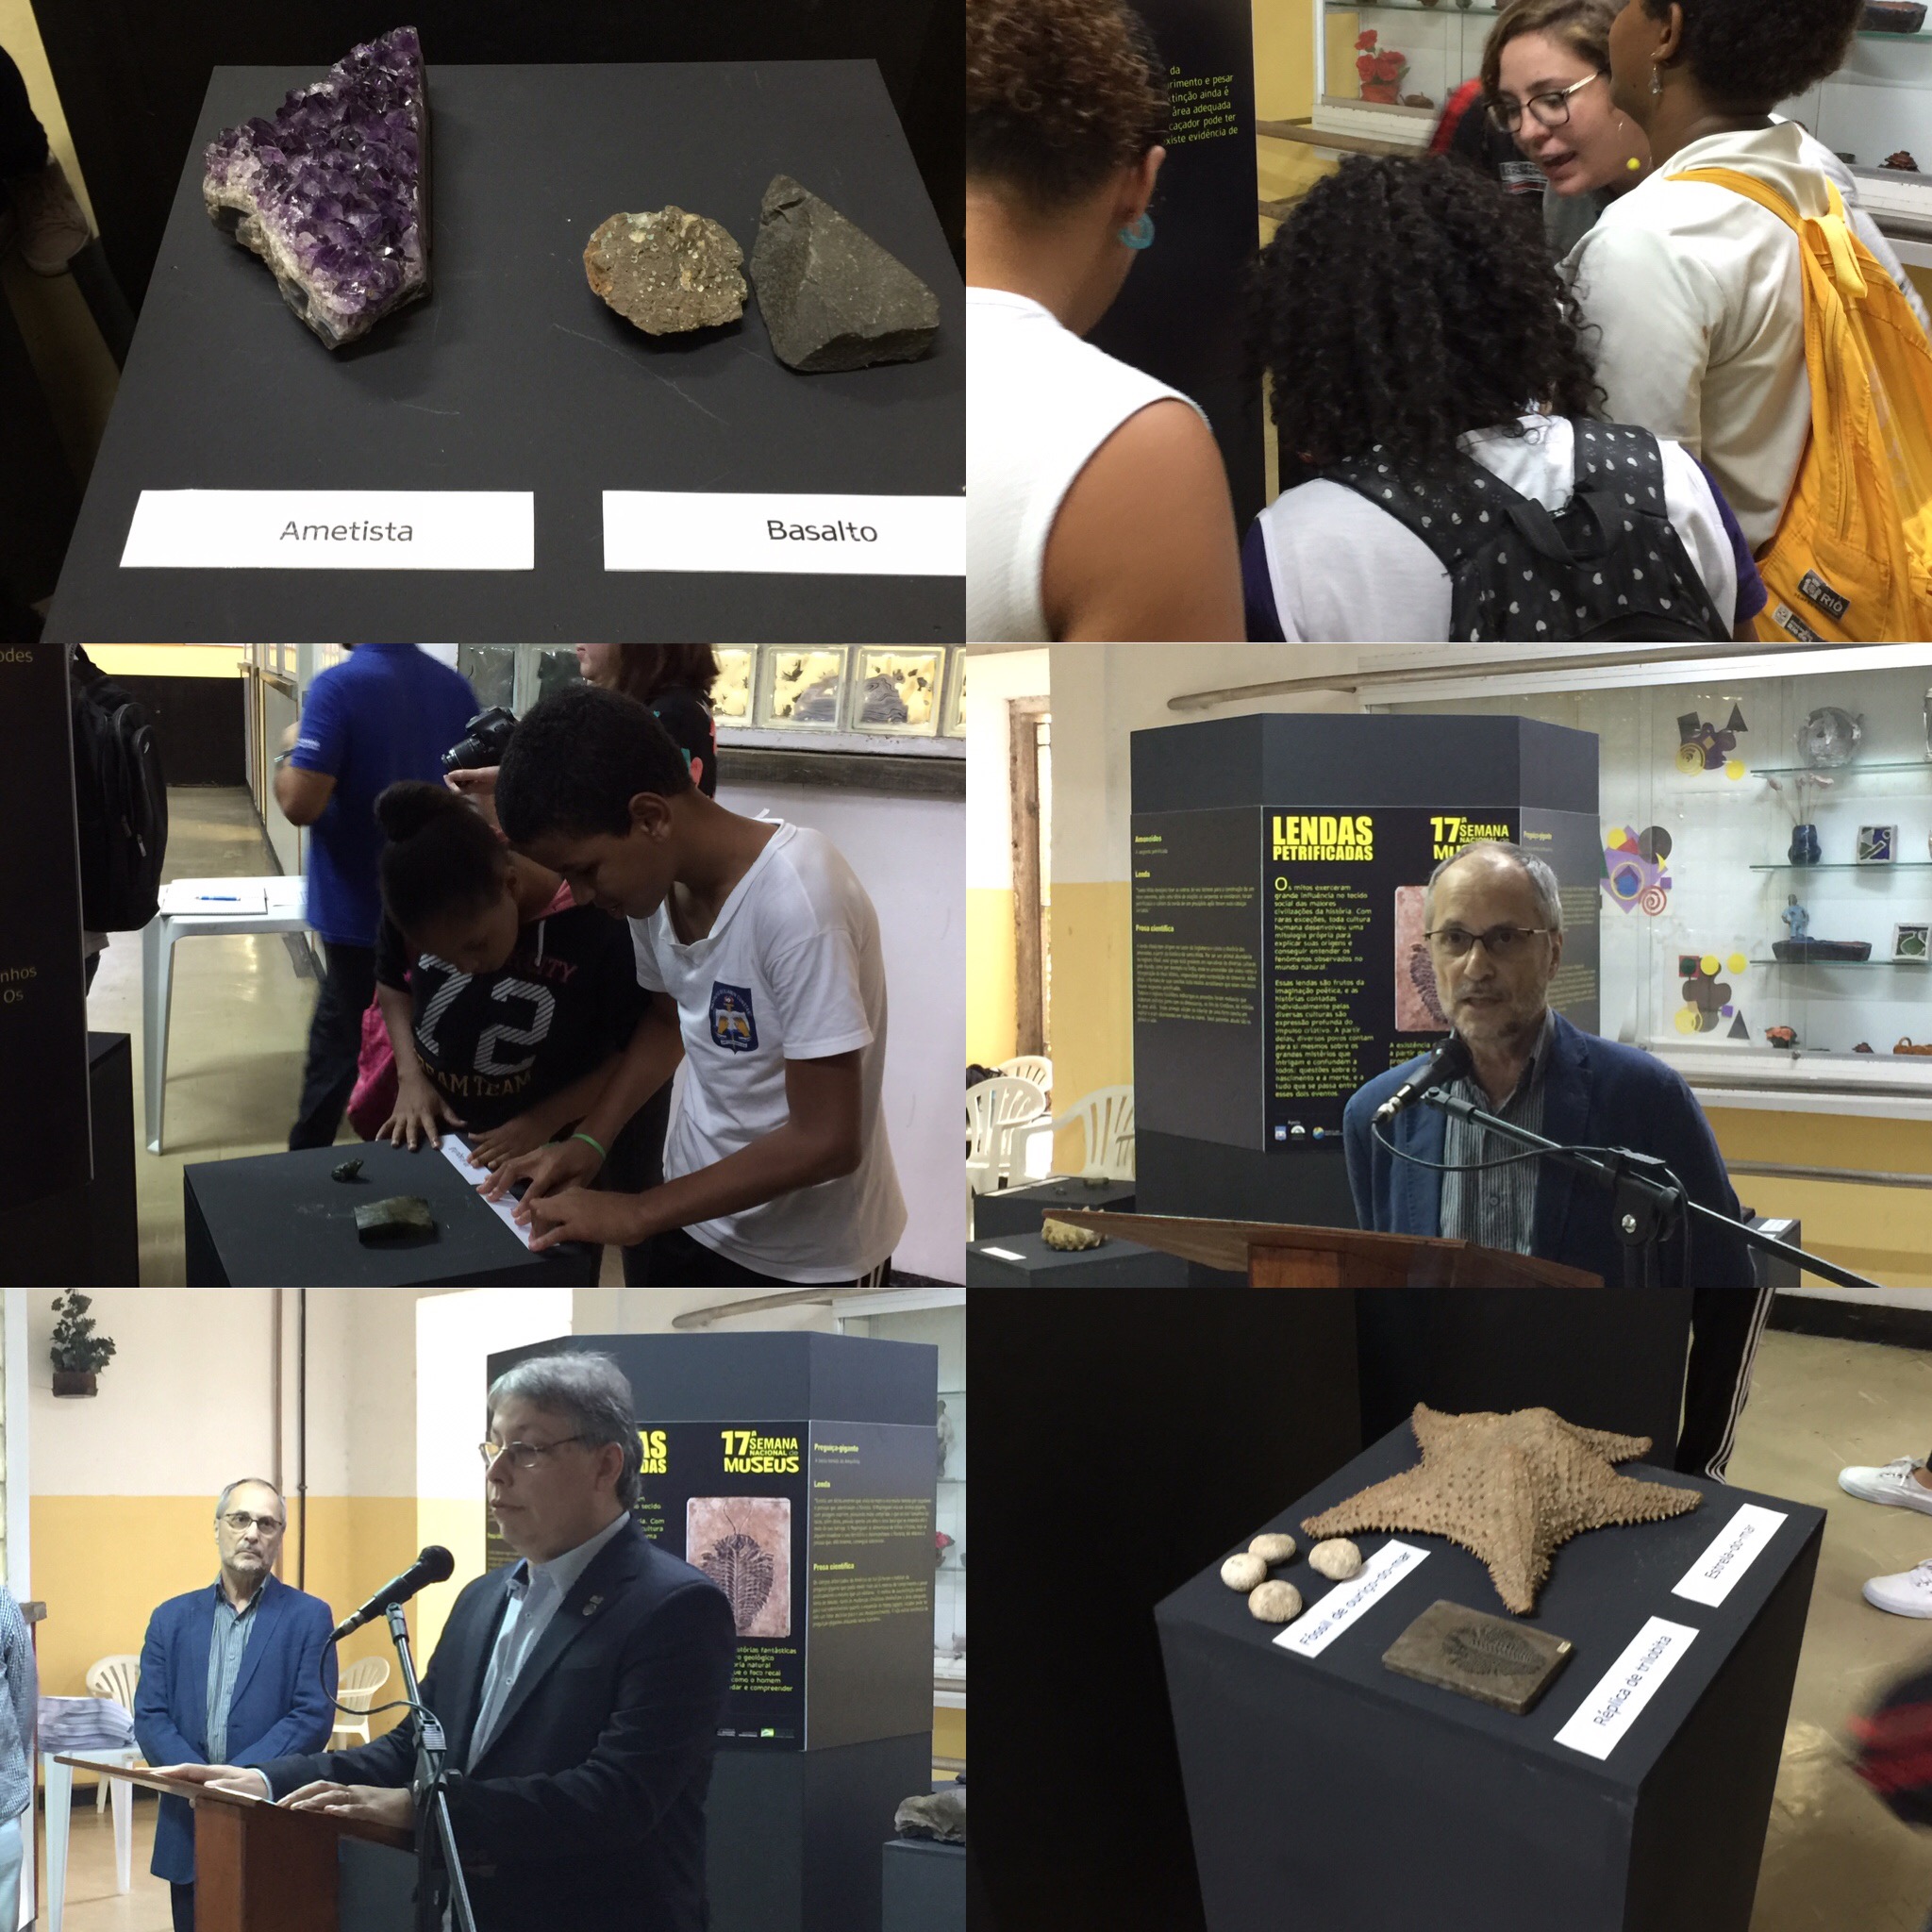 mosaico com seis fotos do evento, como as fotos dos diretores do CPRM e do IBC falando ao microfone, de rochas e fósseis, e de alunos examinando as peças da exposição